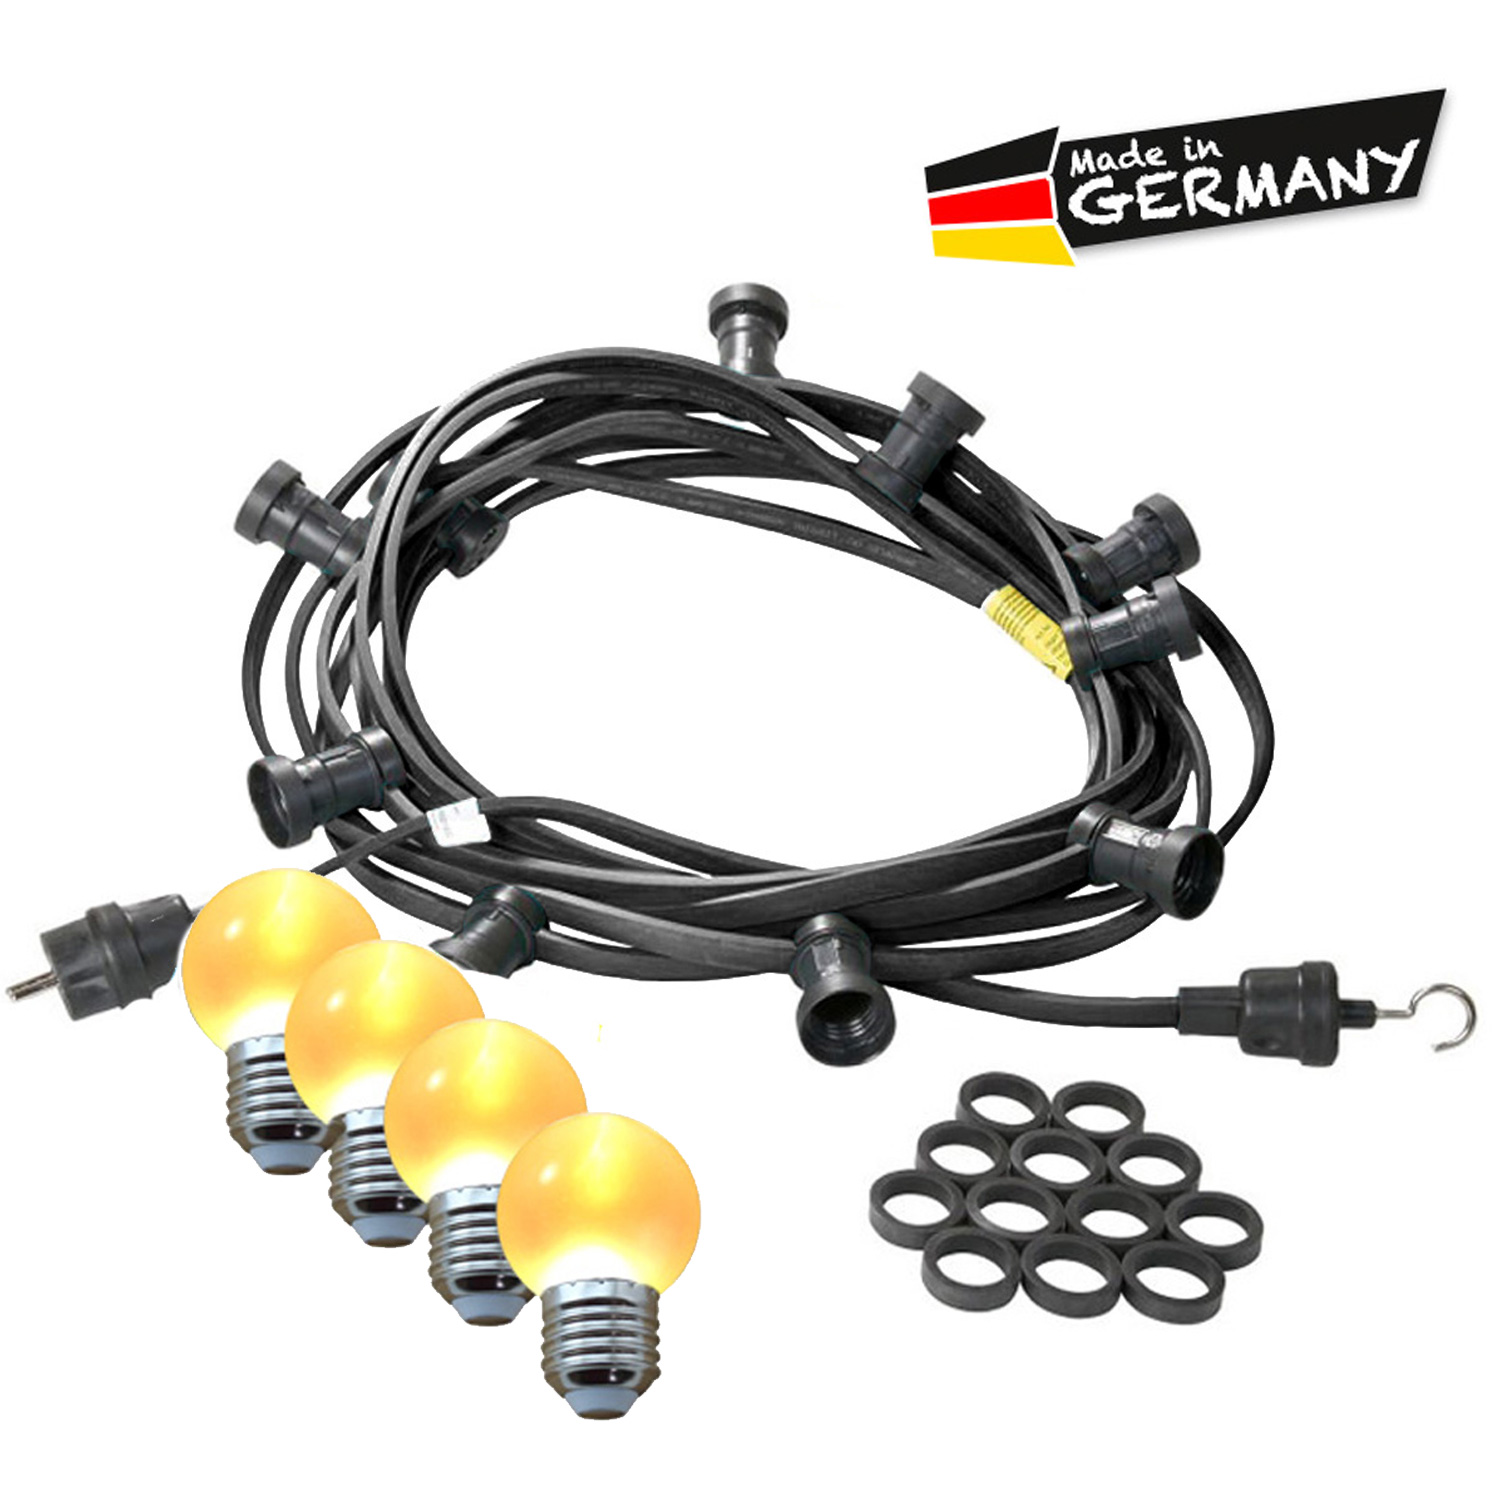 Illu-/Partylichterkette 10m - Außenlichterkette - Made in Germany - 10 x ultra-warmweiße LED Kugeln